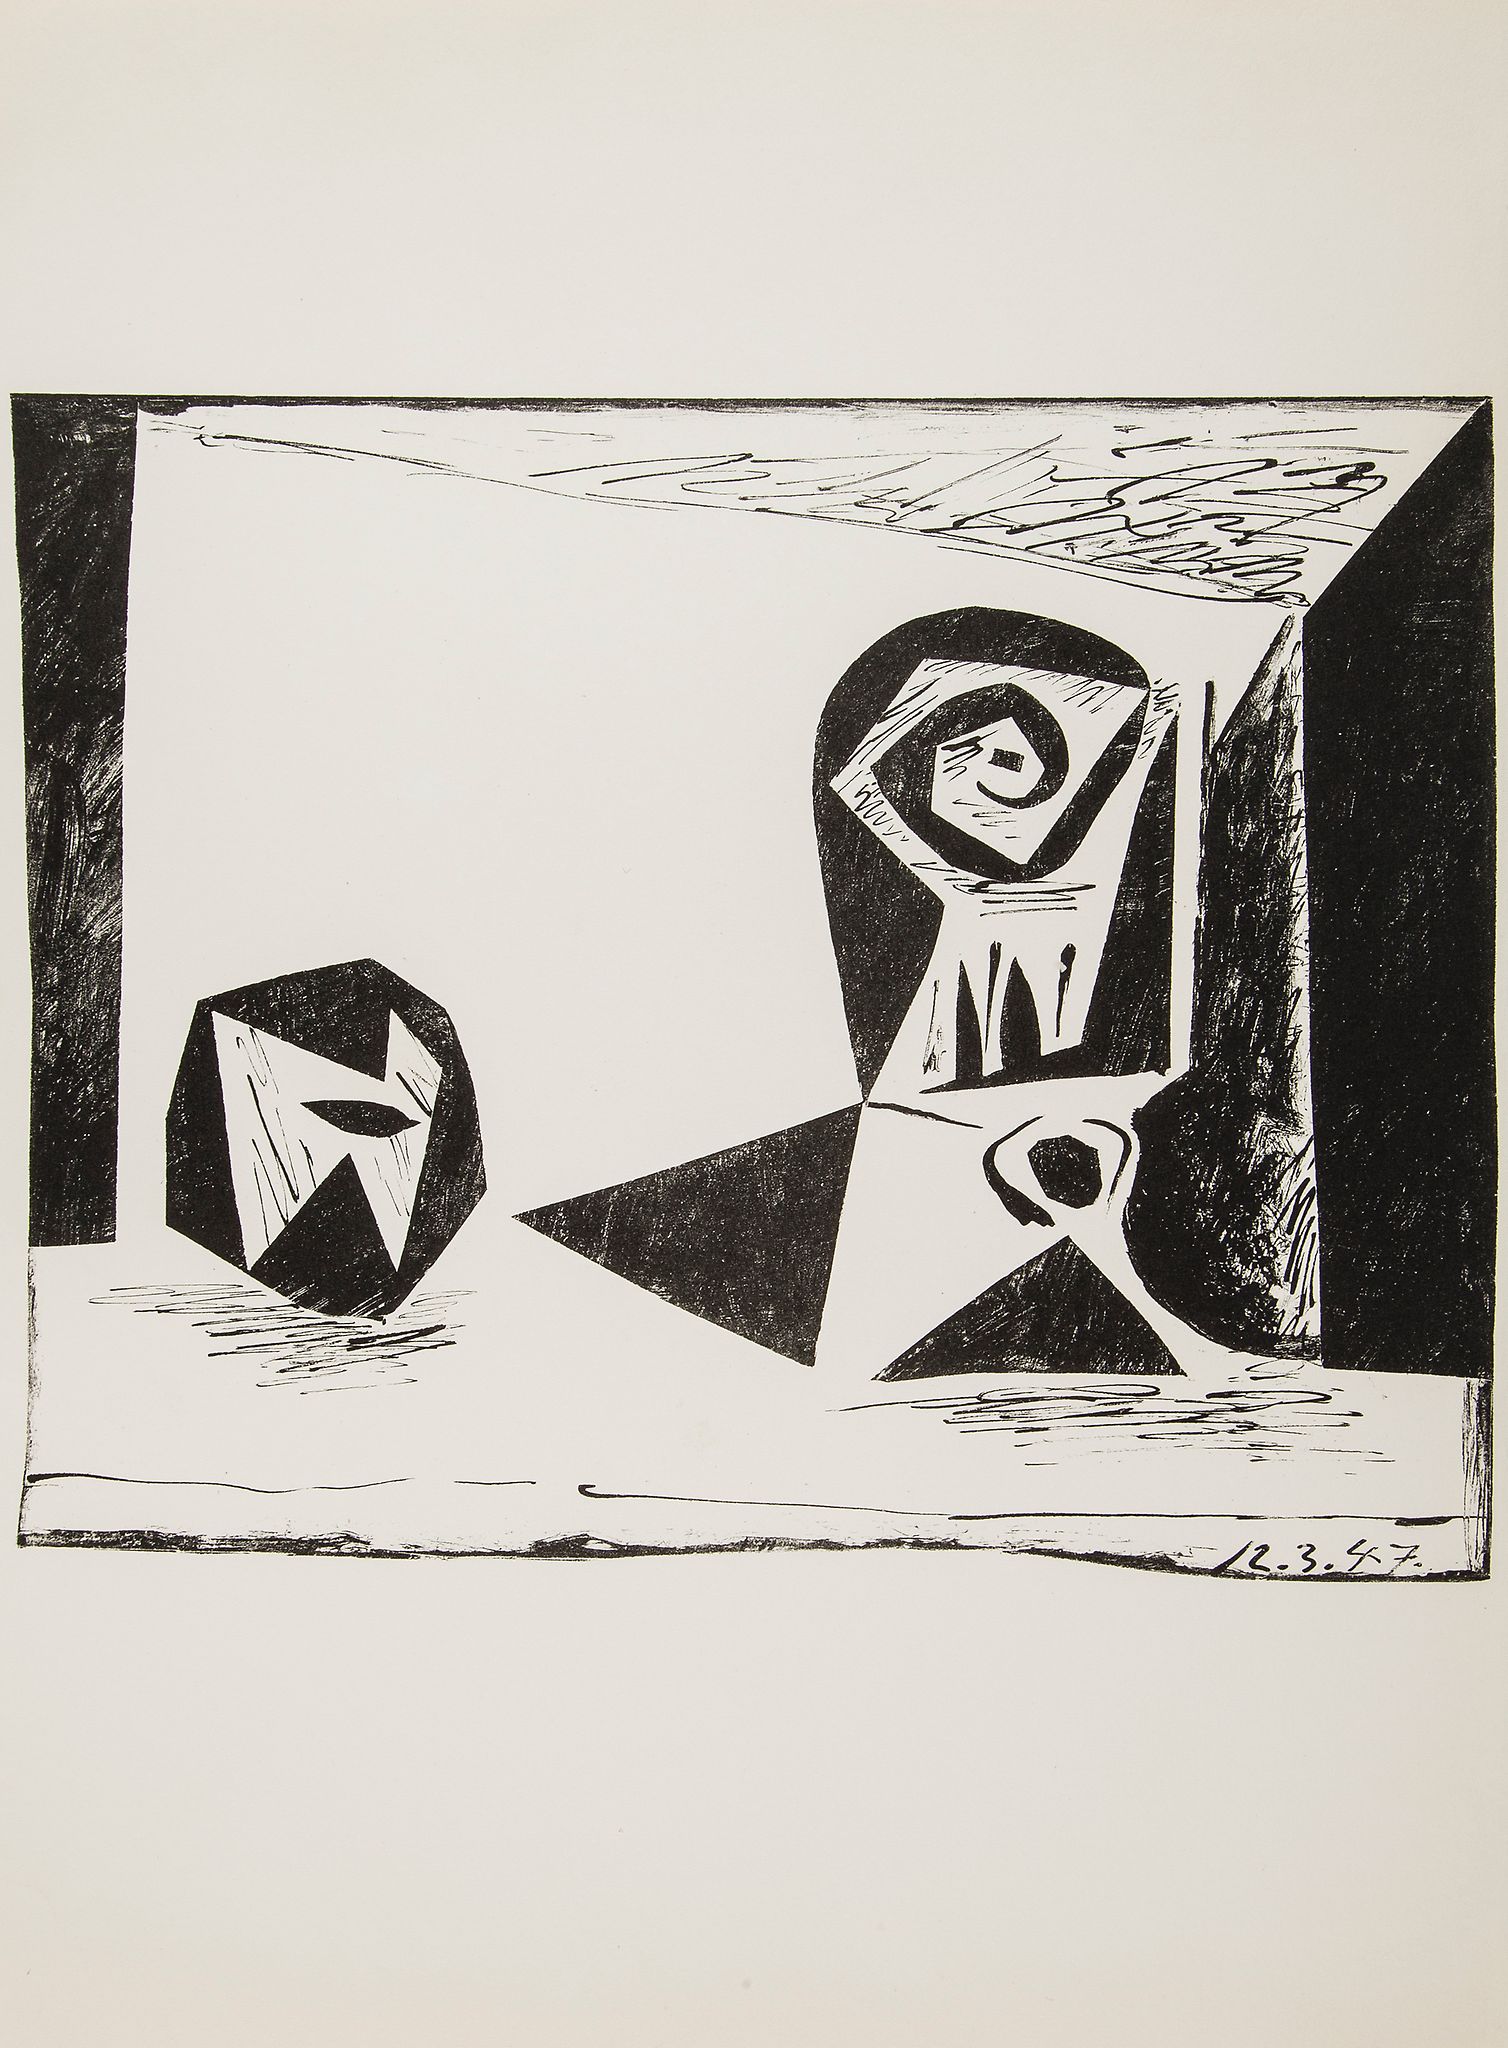 Pablo Picasso (1881-1973) - Composition au verre Ó pied (B.431) lithograph, 1947, artist's proof